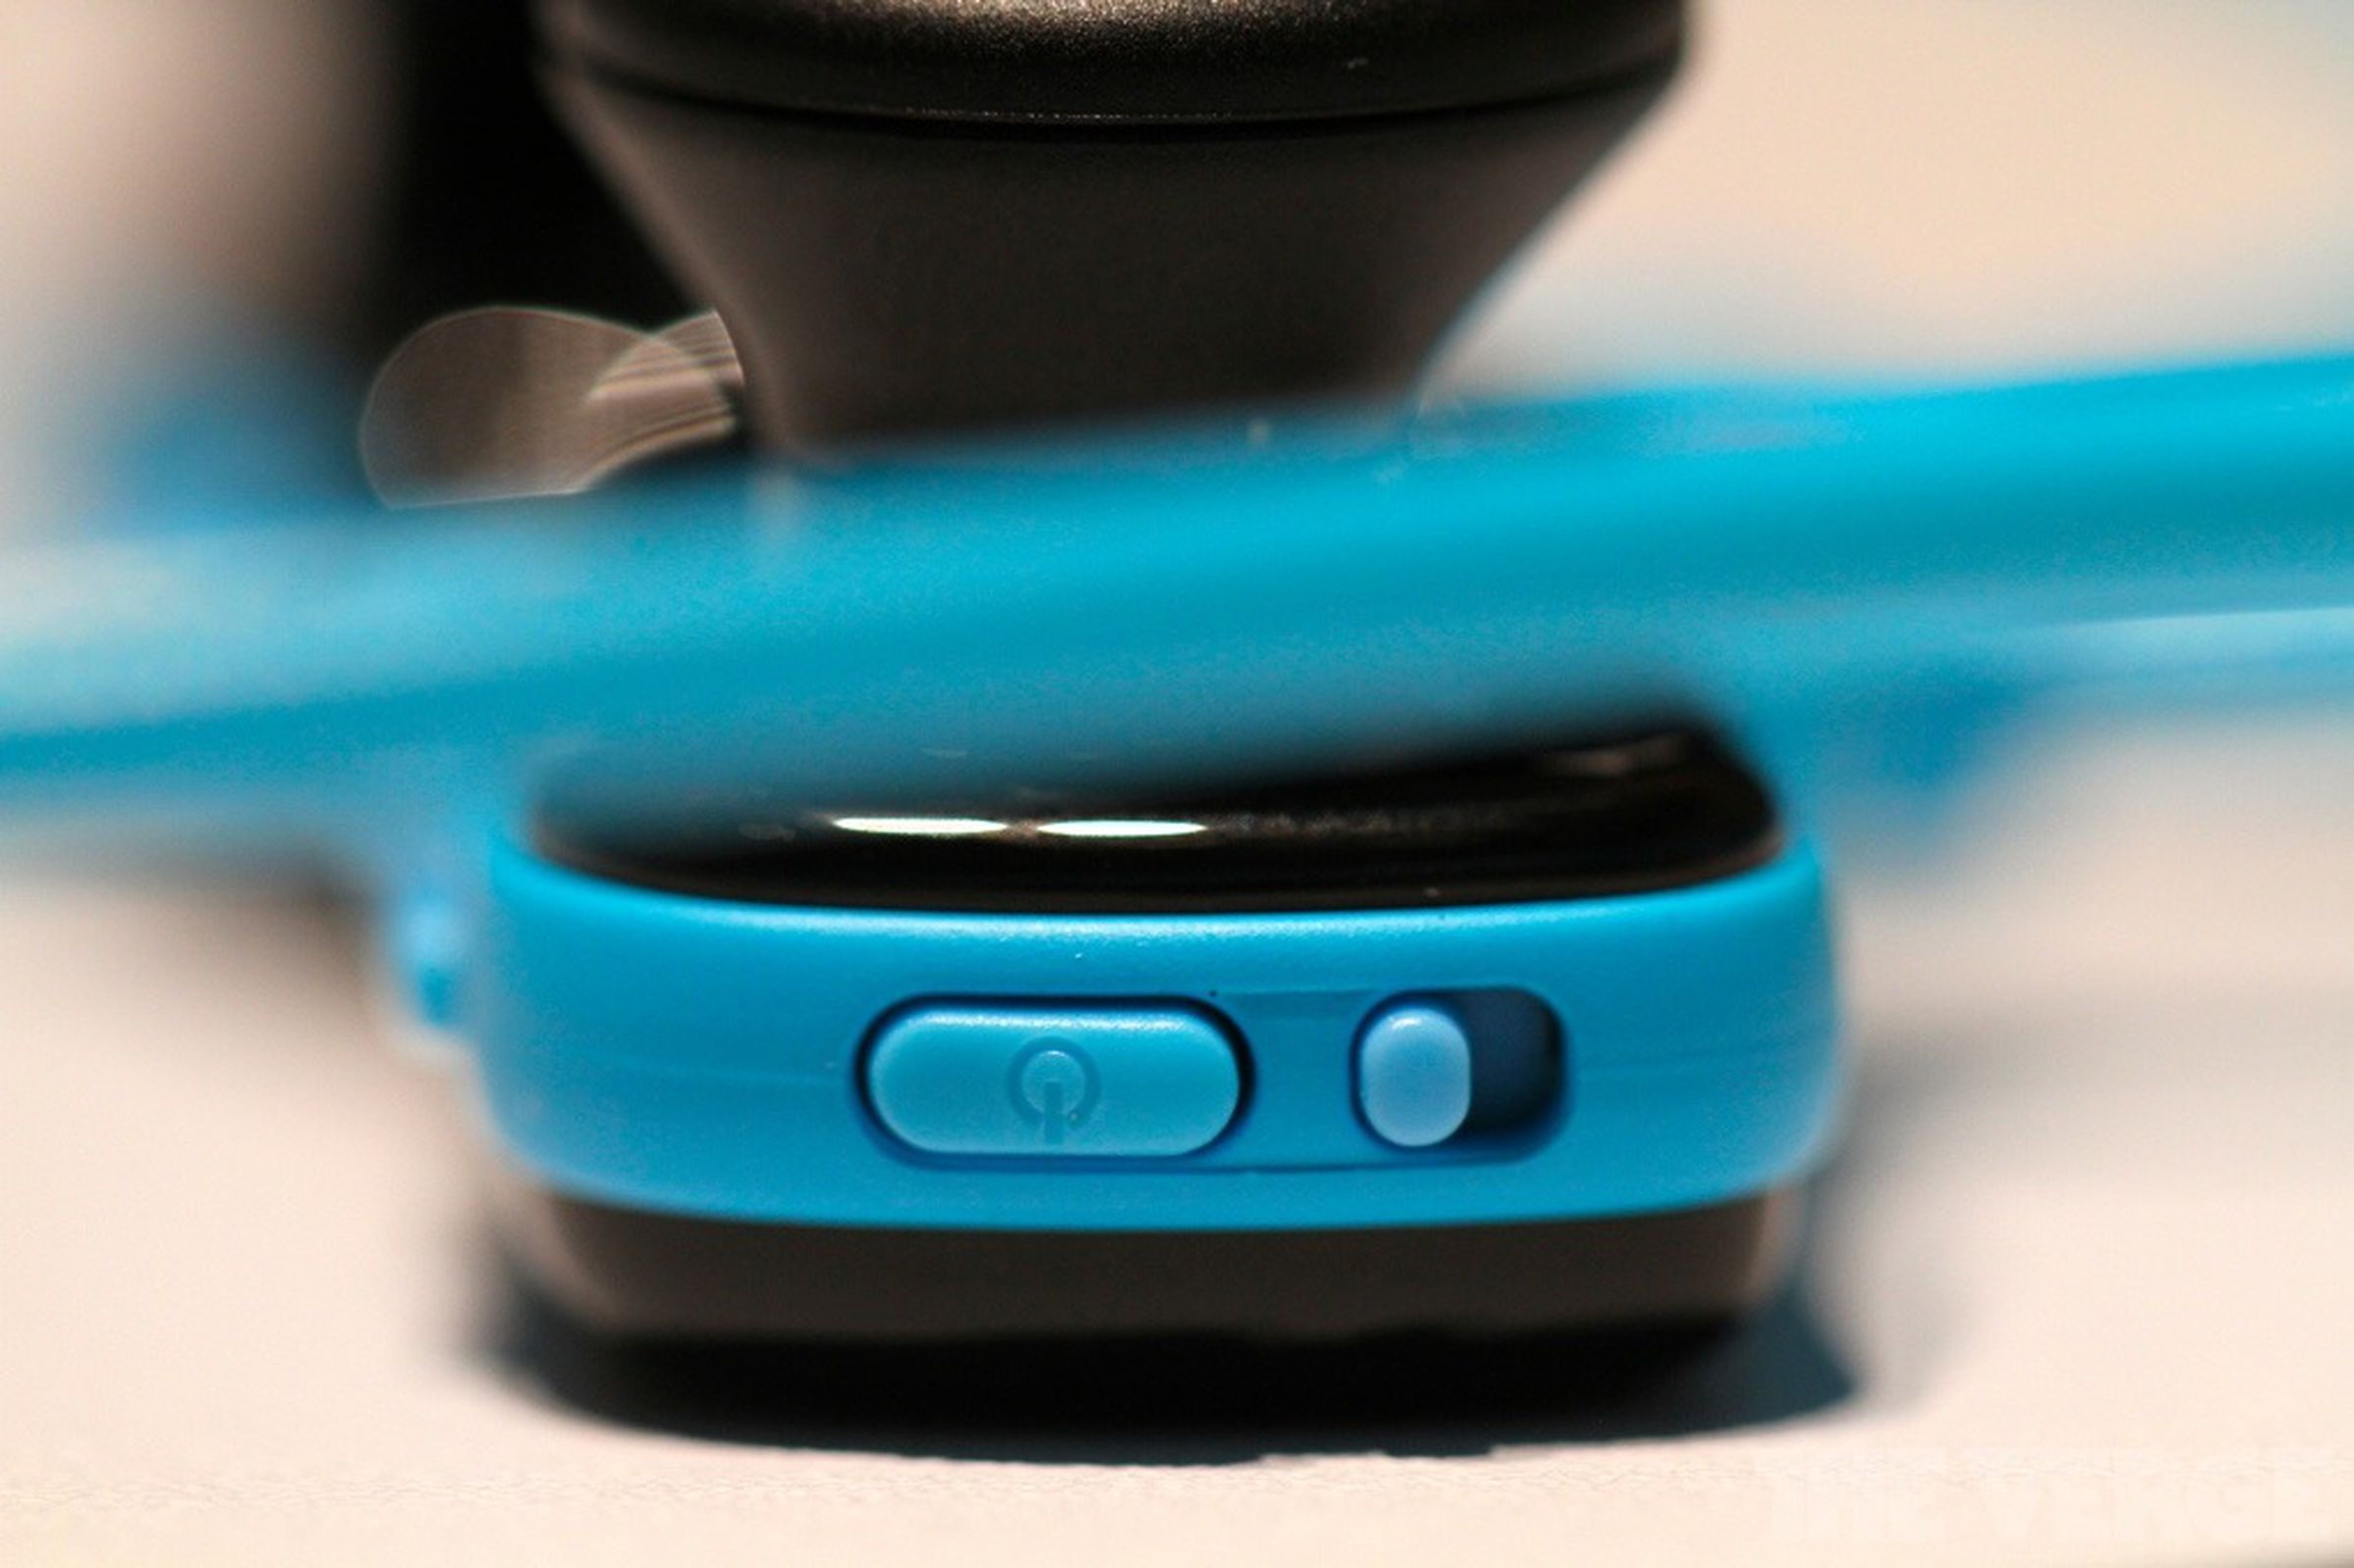 Sony's quick charging, waterproof Walkman hands-on photos